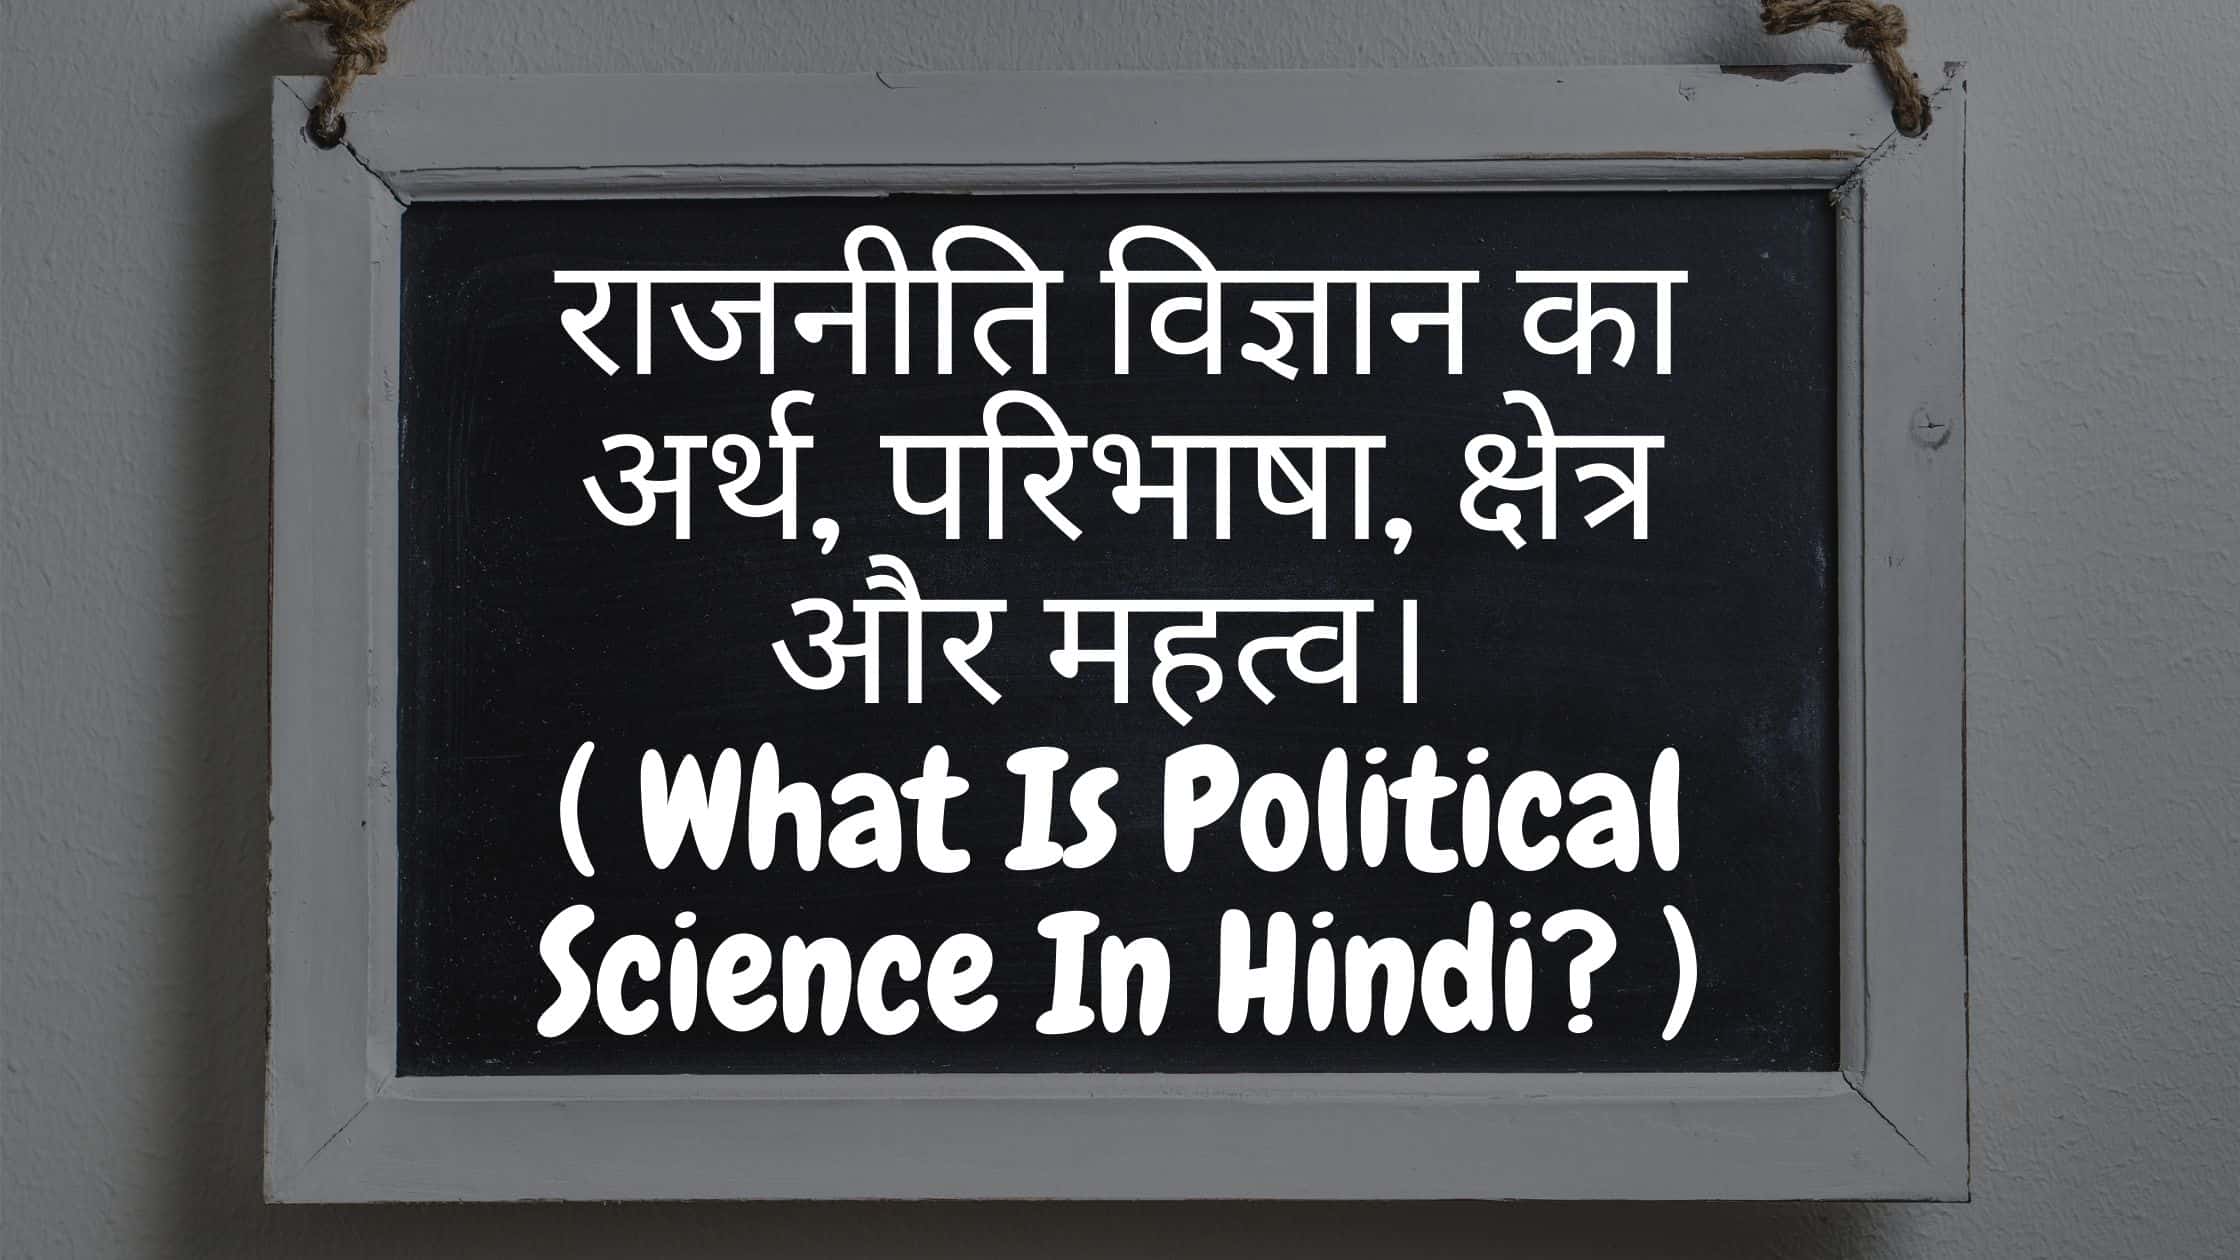 राजनीति विज्ञान का अर्थ, परिभाषा, क्षेत्र और महत्व। ( What Is Political Science In Hindi?